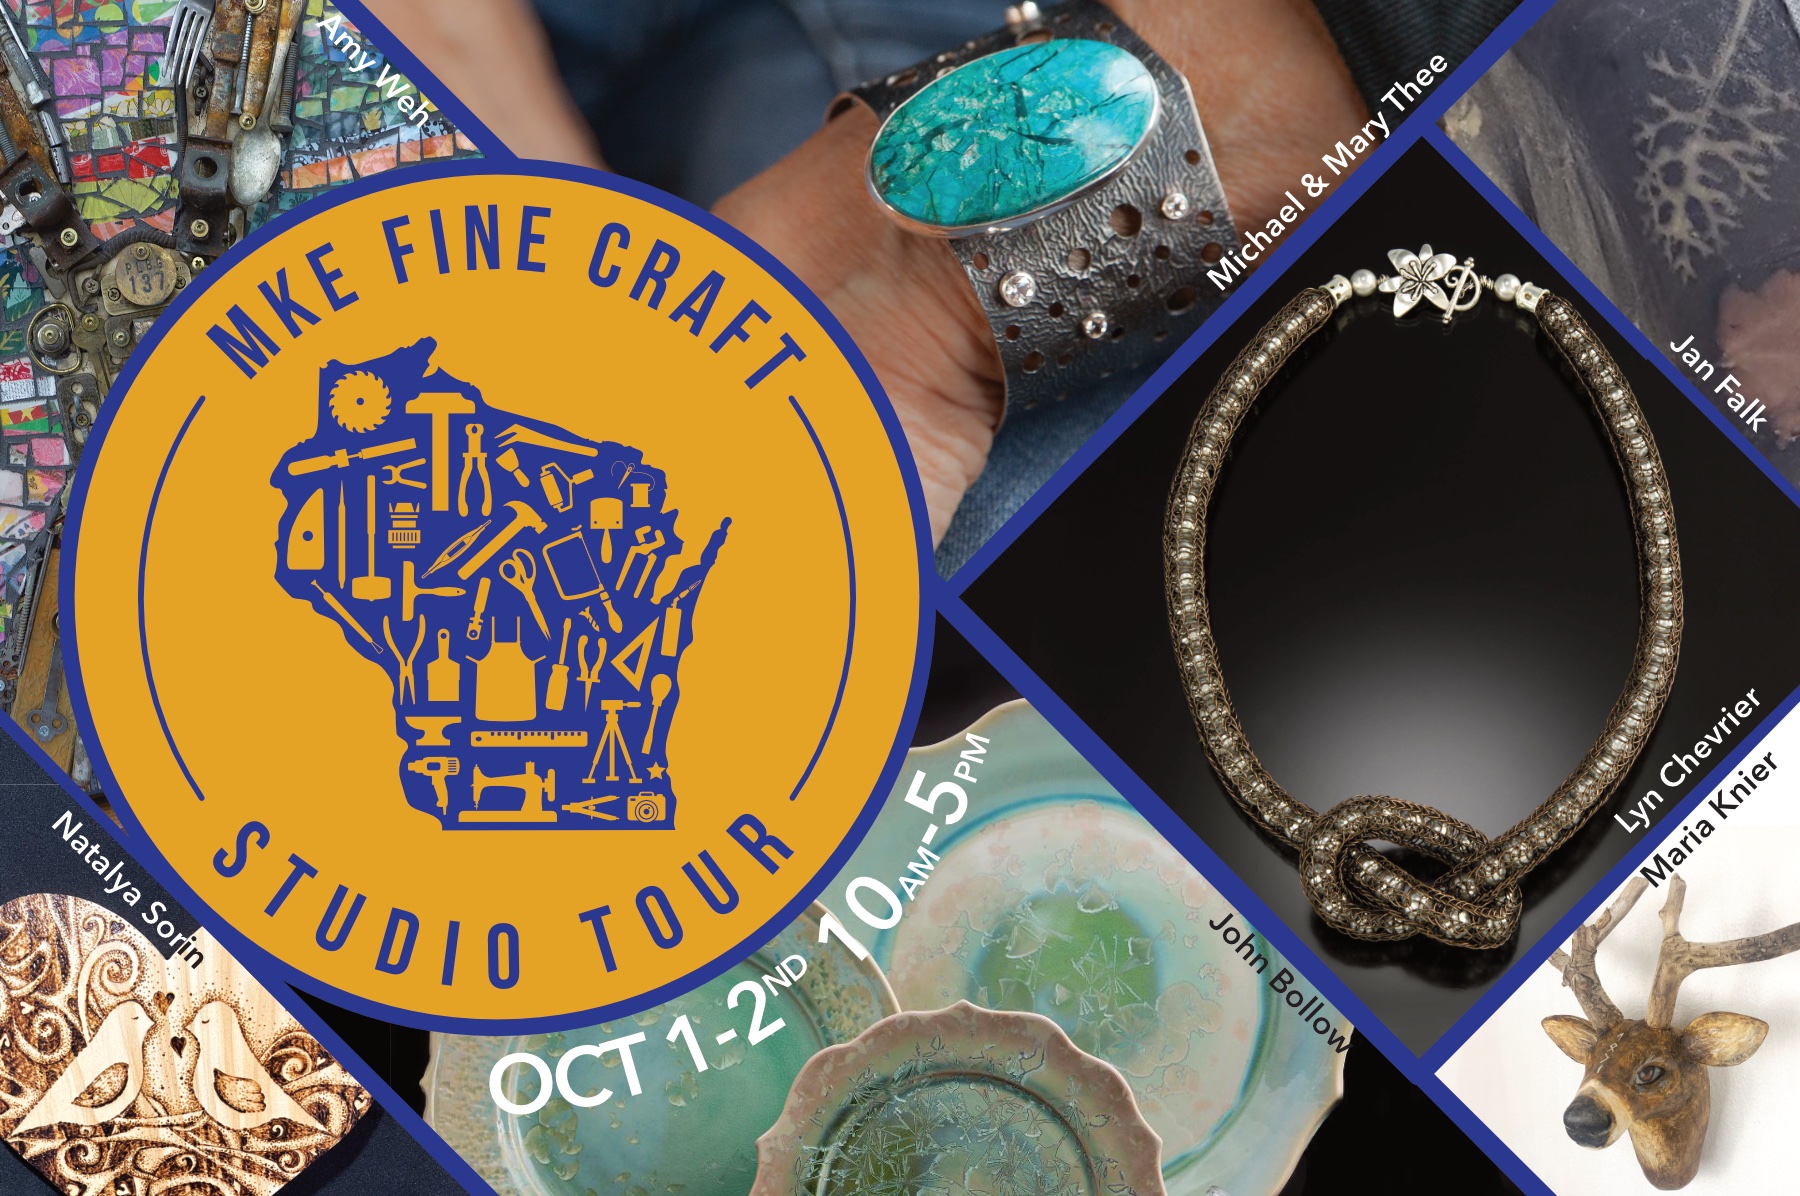 make fine craft studio tour